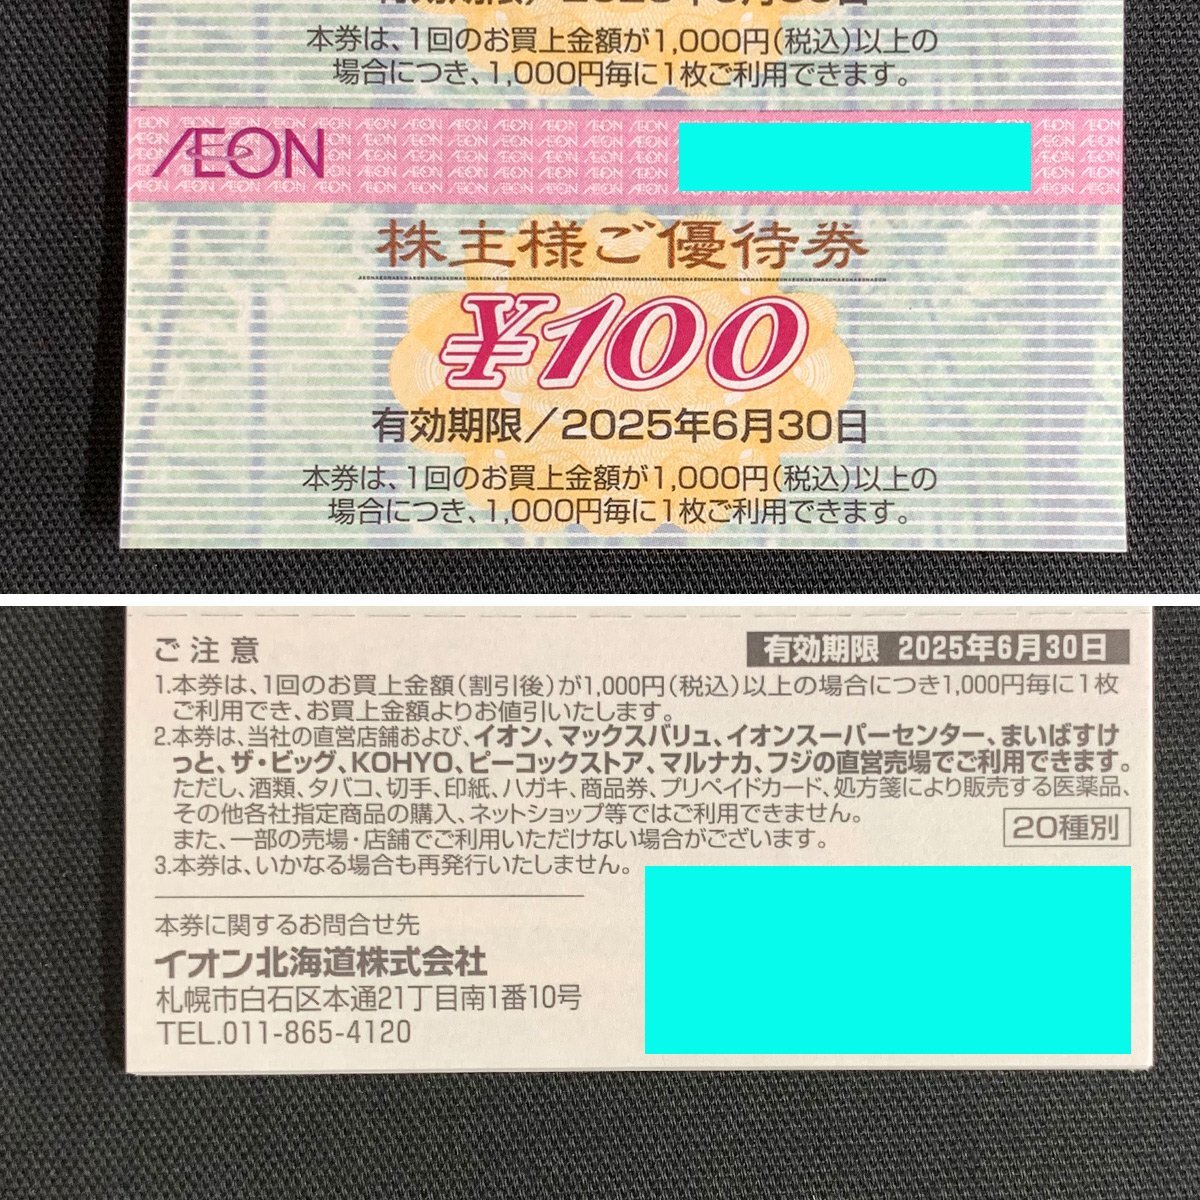 TH2b [ бесплатная доставка ] ион Hokkaido акционерное общество AEON акционер sama . пригласительный билет 50 листов ..×2 шт. 100 иен ×100 листов итого 10,000 иен минут 2025 год 6 месяц 30 до 